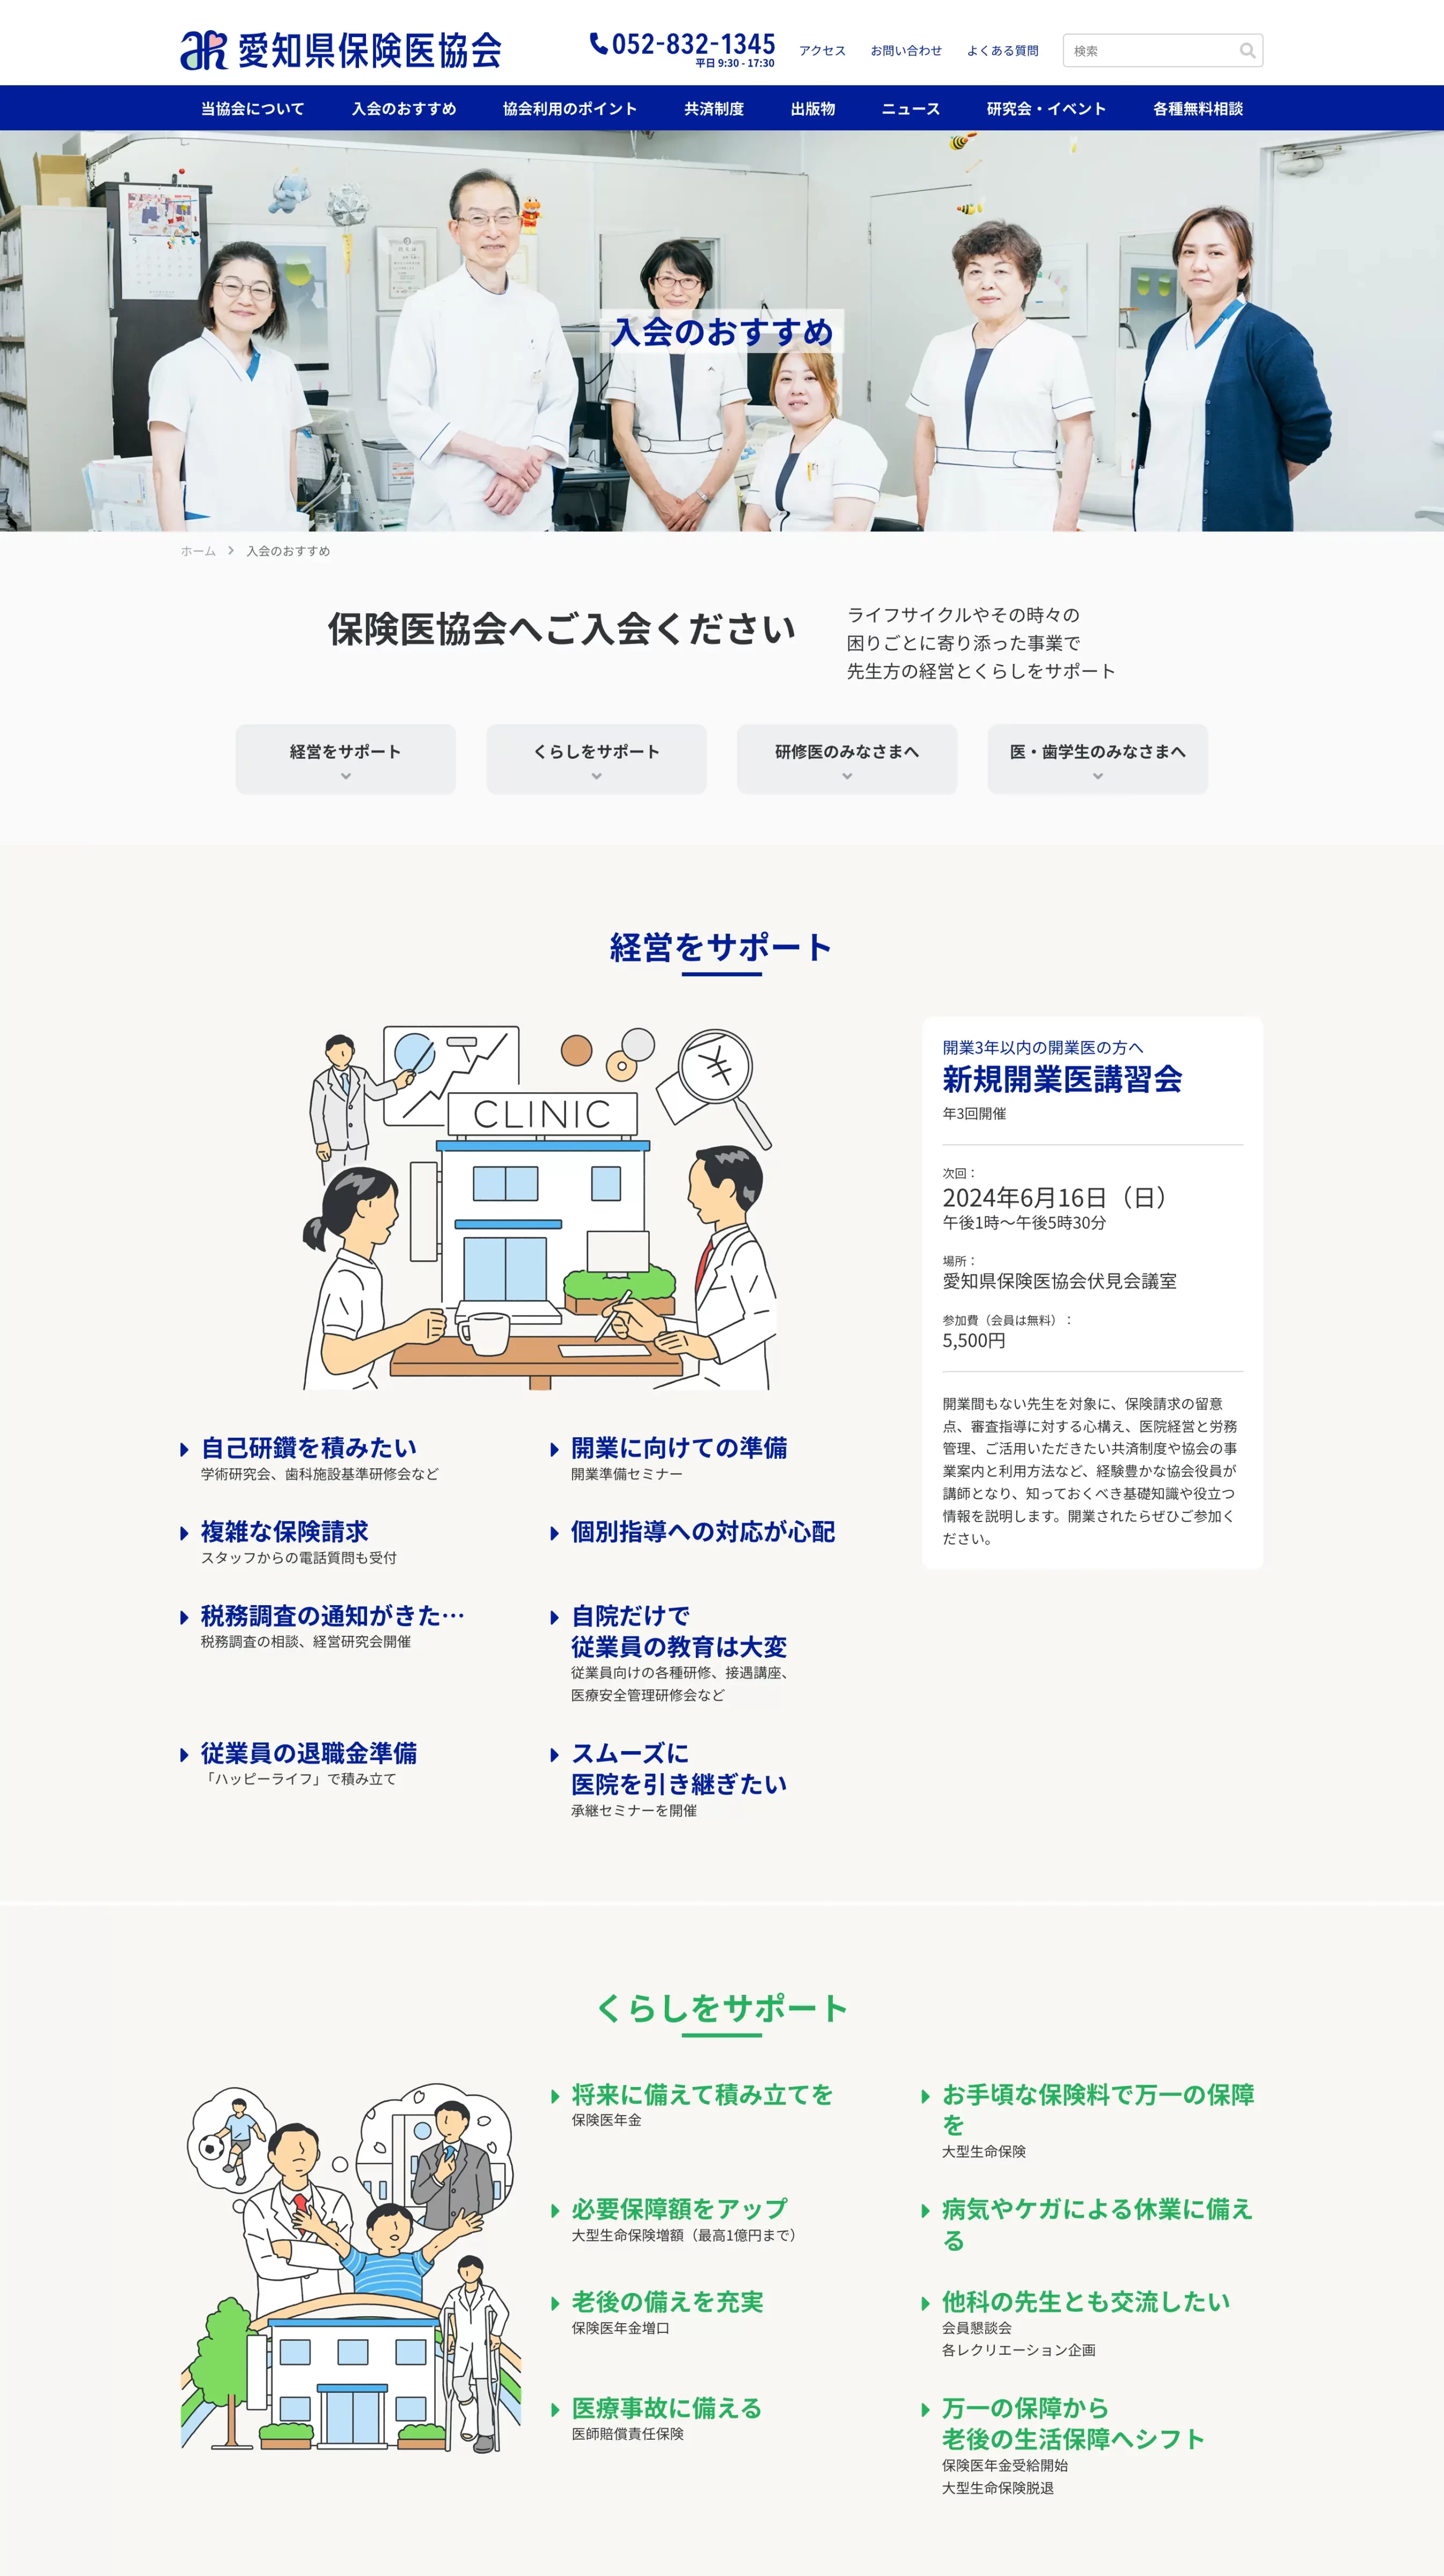 愛知県保険医協会　ウェブサイト